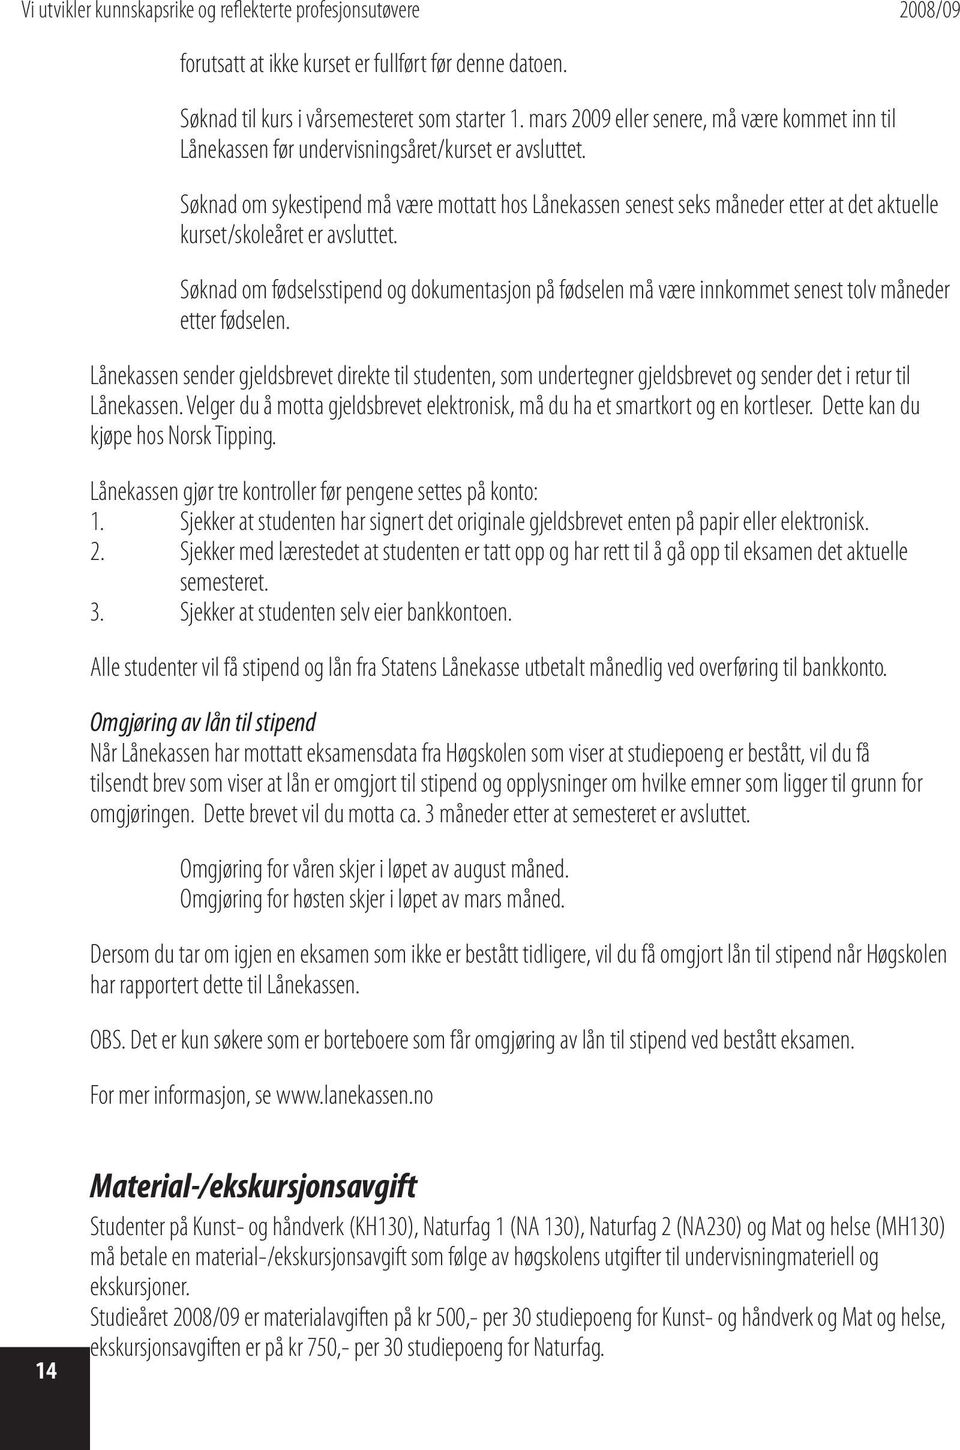 Søknad om sykestipend må være mottatt hos Lånekassen senest seks måneder etter at det aktuelle kurset/skoleåret er avsluttet.